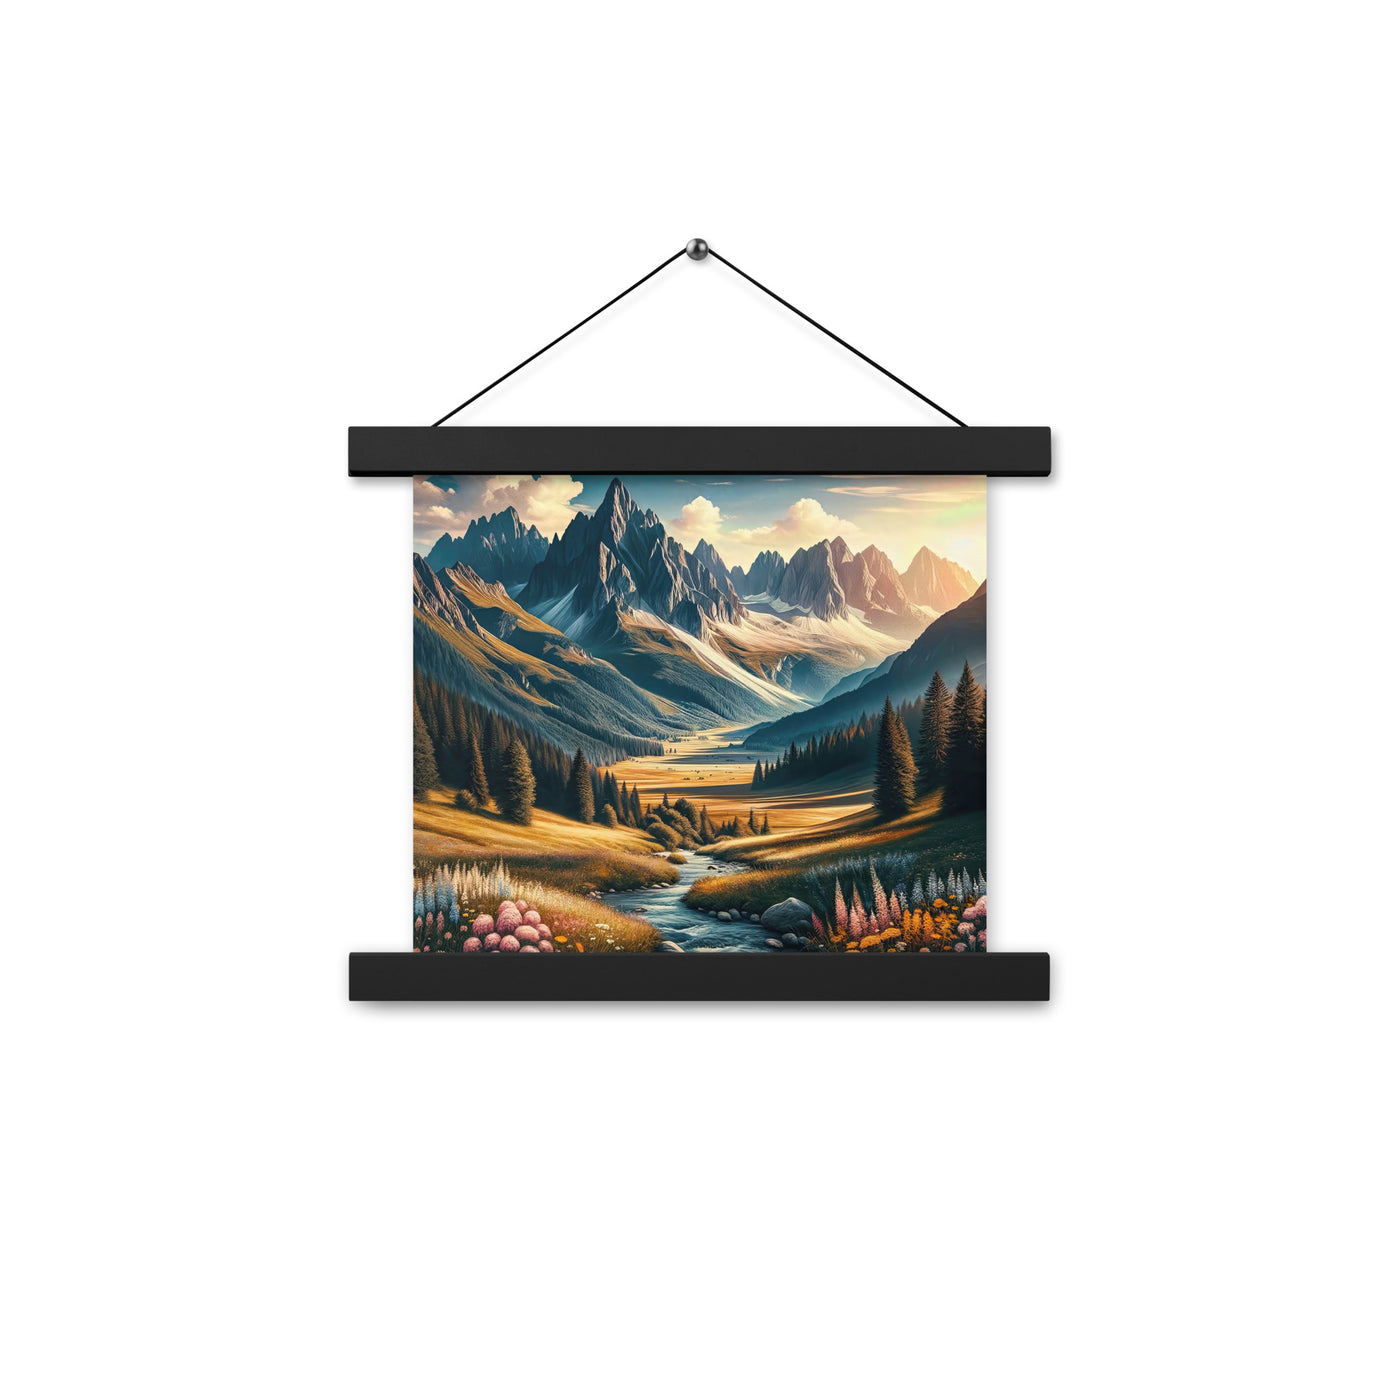 Quadratisches Kunstwerk der Alpen, majestätische Berge unter goldener Sonne - Premium Poster mit Aufhängung berge xxx yyy zzz 25.4 x 25.4 cm